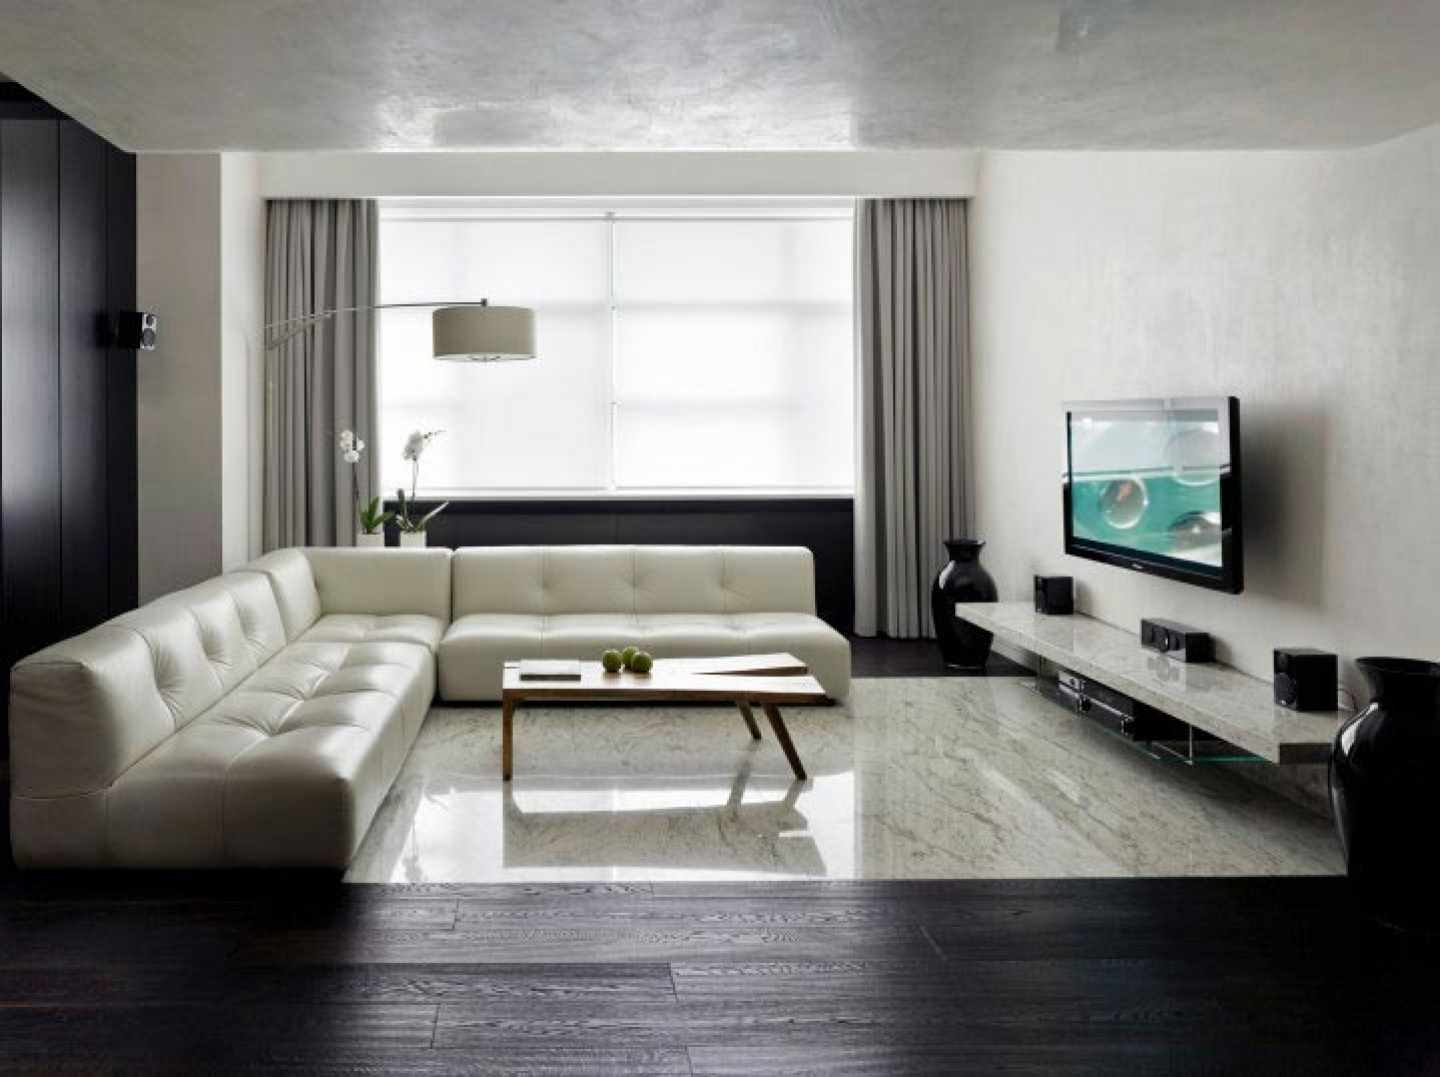 Ein Beispiel für die Verwendung des hellen Designs eines Wohnzimmers im Stil des Minimalismus